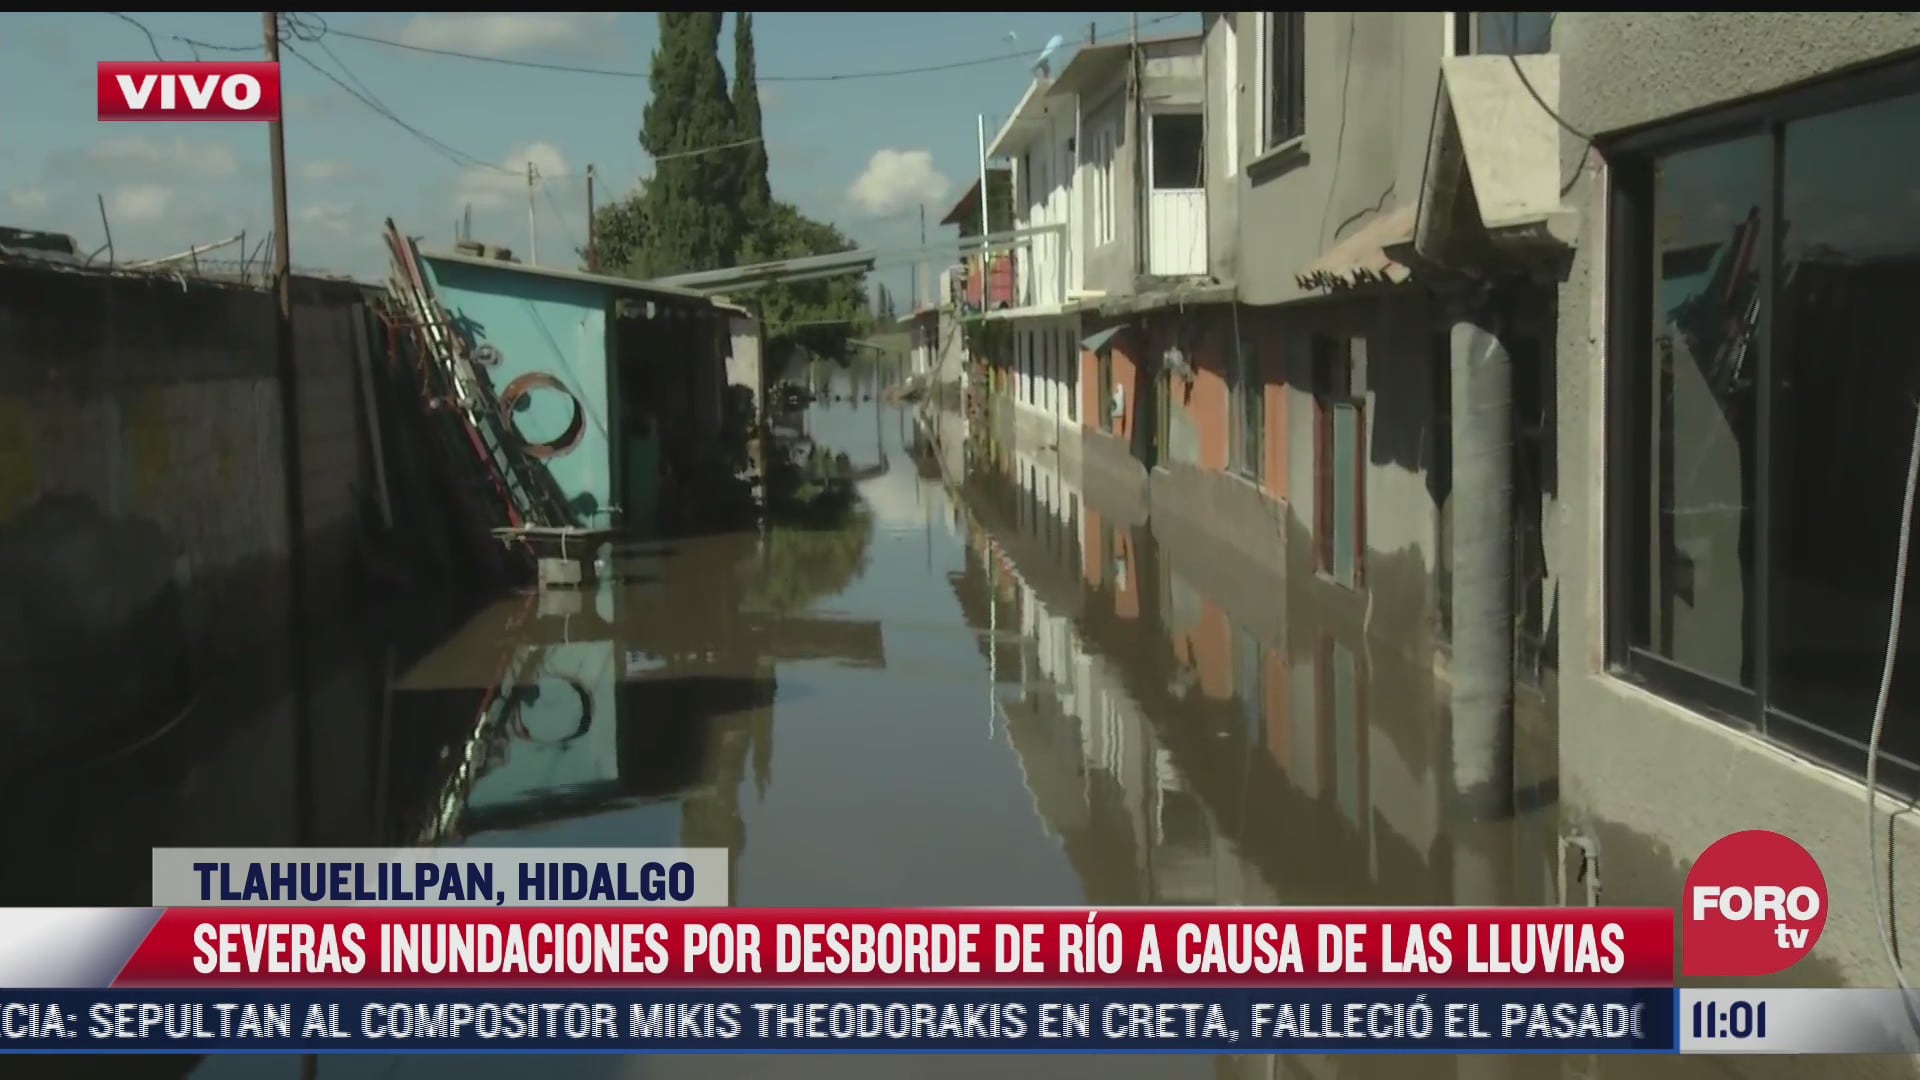 mas de 200 casas estan afectadas por desborde de rio en tlahuelilpan hidalgo